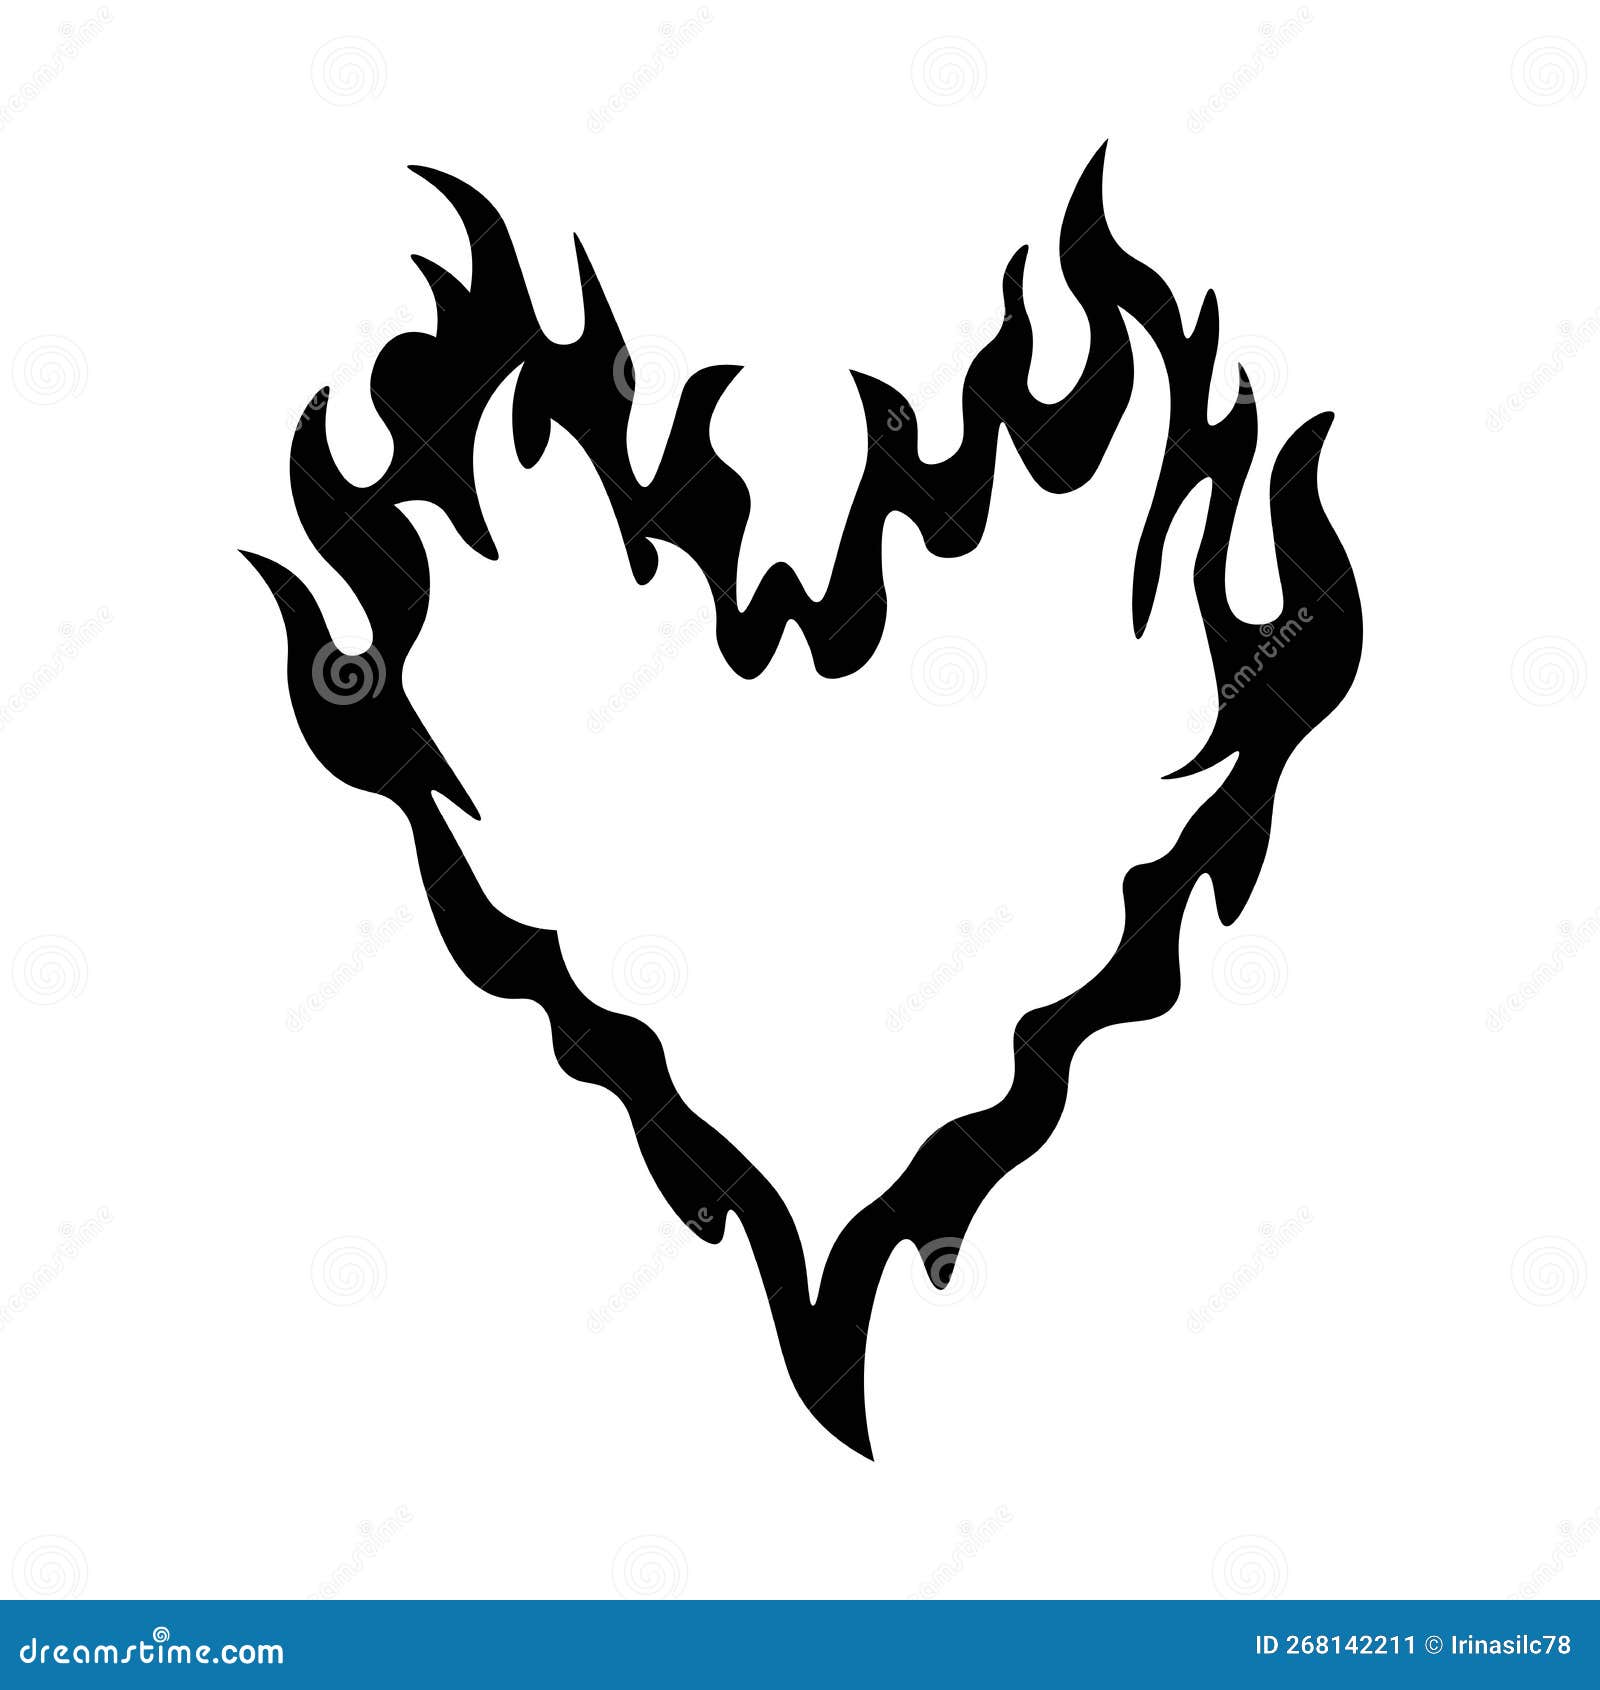 delinear o ícone de coração ardente. silhueta de coração com fogo,  pictograma de amor ardente em 2023